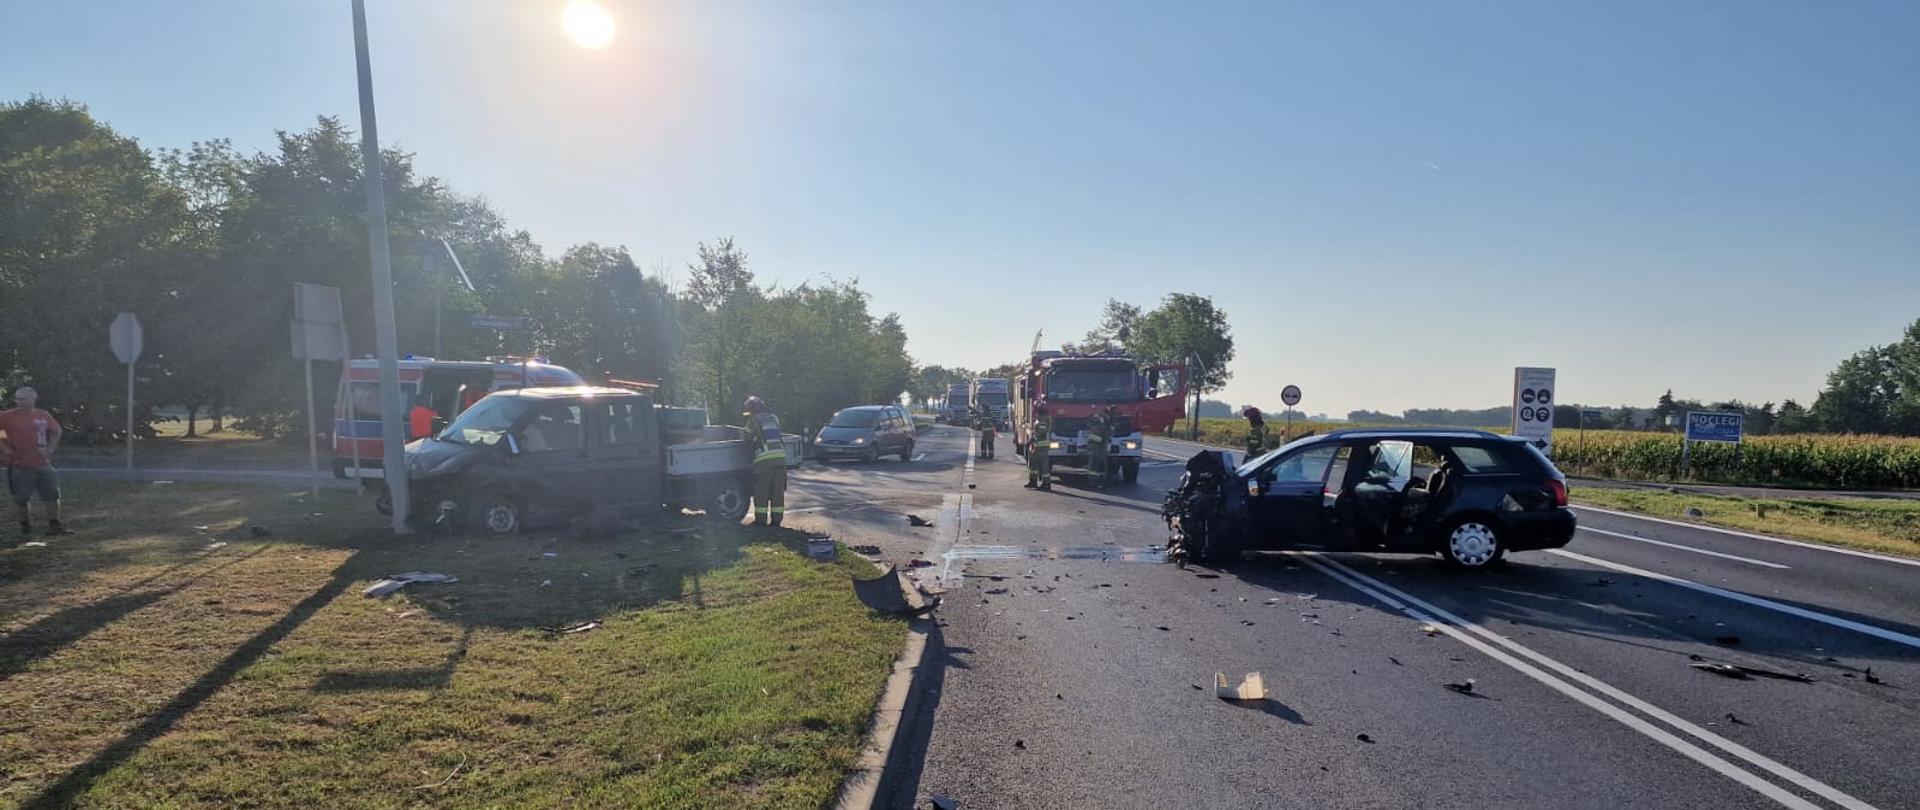 Wypadek drogowy na obwodnicy Brzegu - zdjęcie przedstawia rozbity samochód osobowy oraz samochód dostawczy, w tle samochód pożarniczy oraz karetka pogotowia